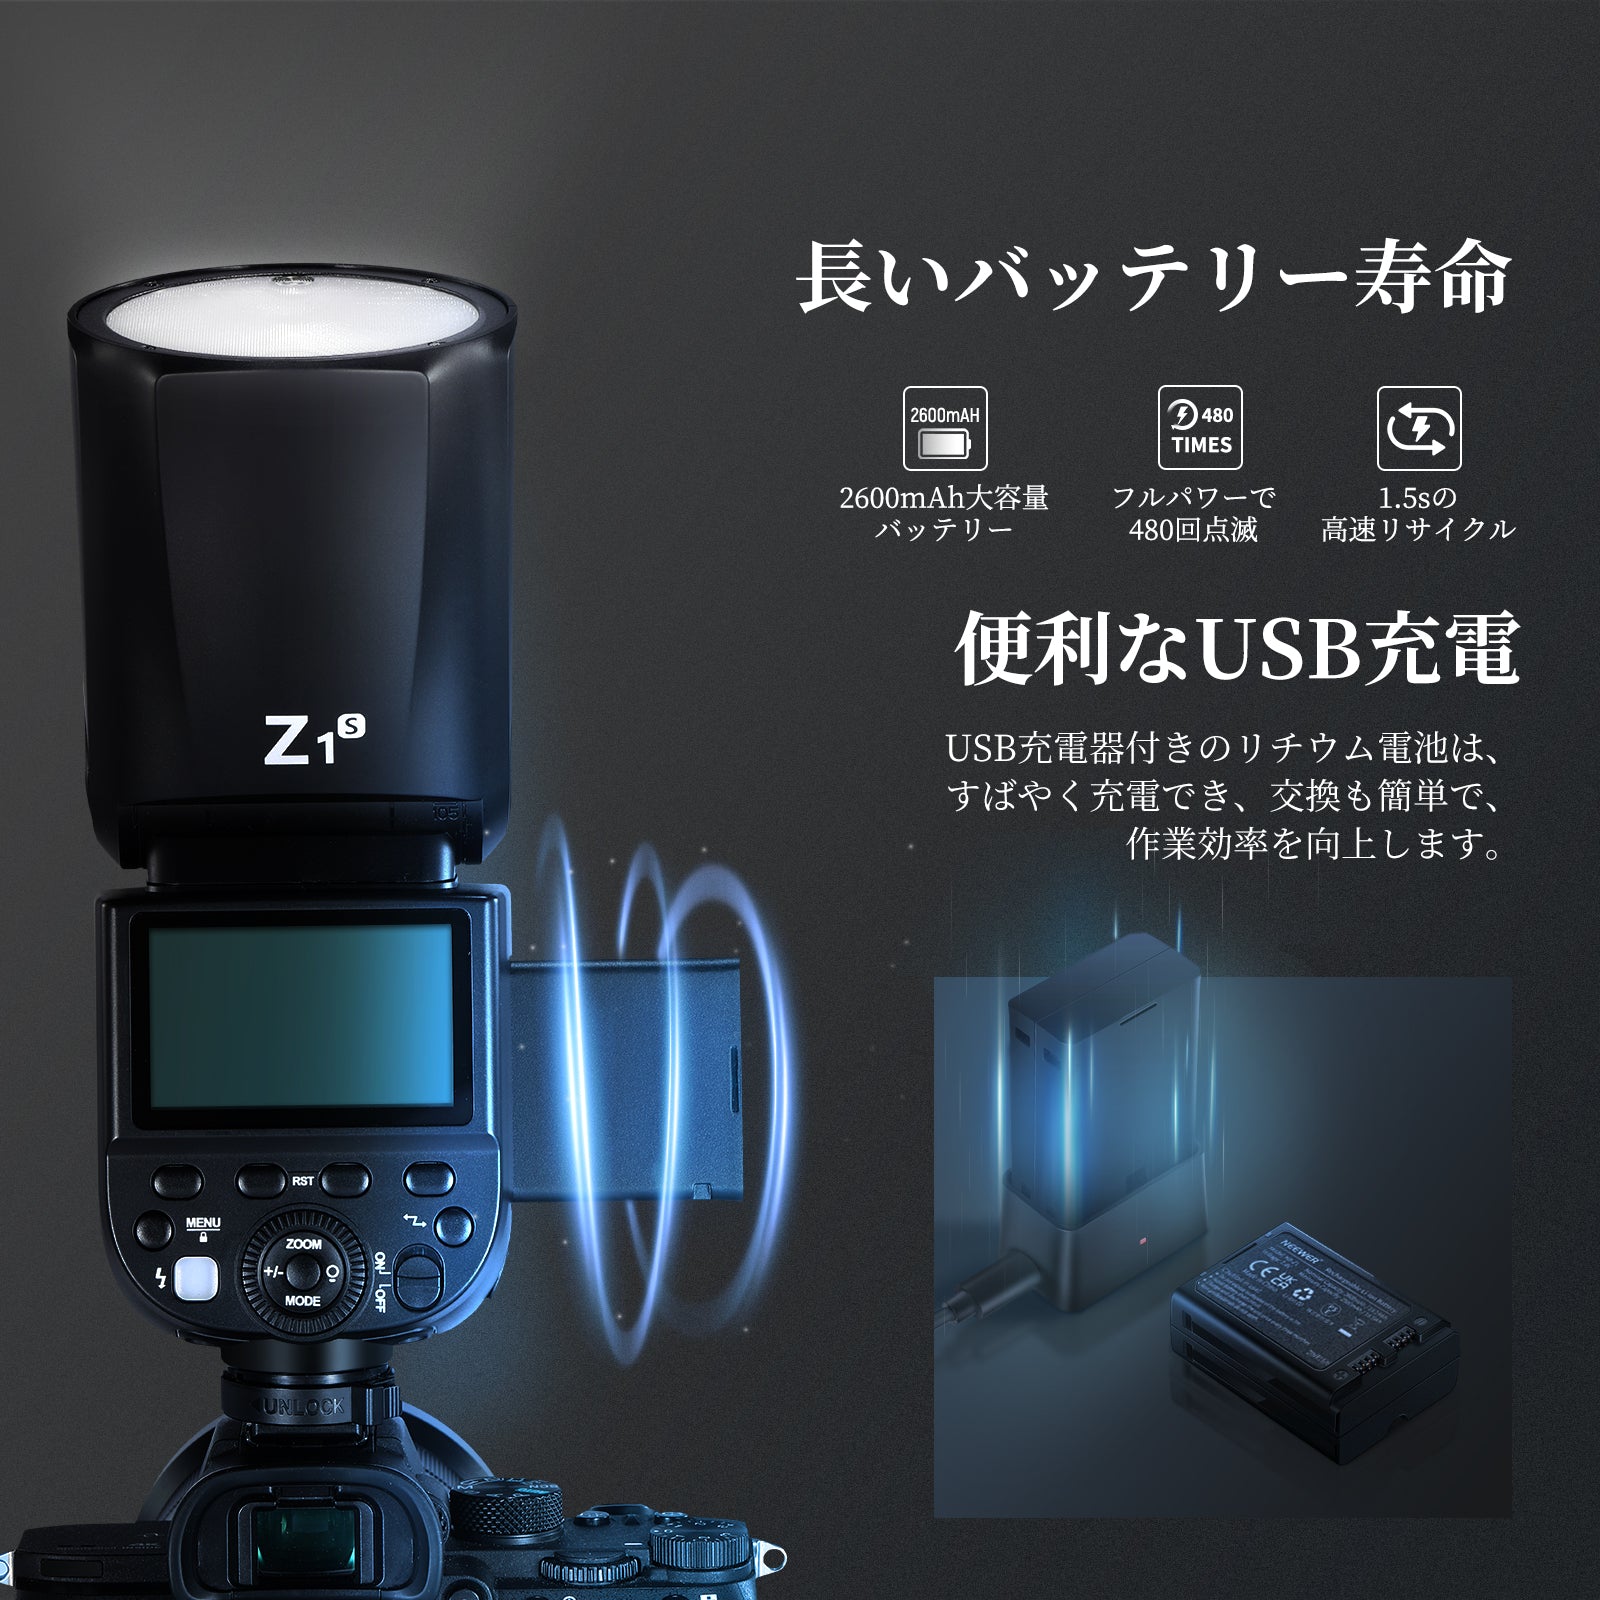 公式卸売NEEWER Z1-S SONY用 デジタルカメラ